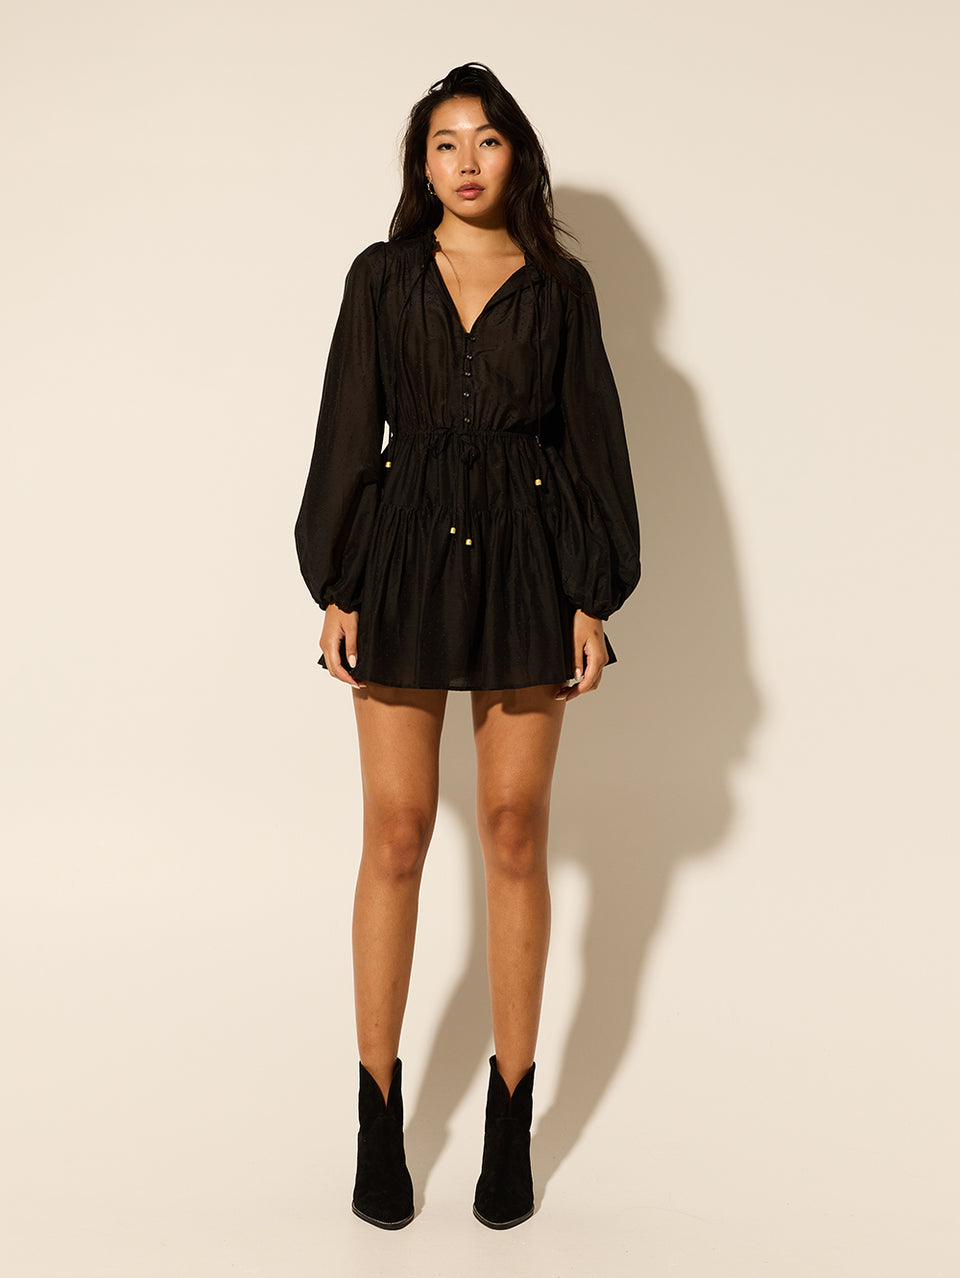 Alejandra Mini Dress KIVARI | Model wears black mini dress